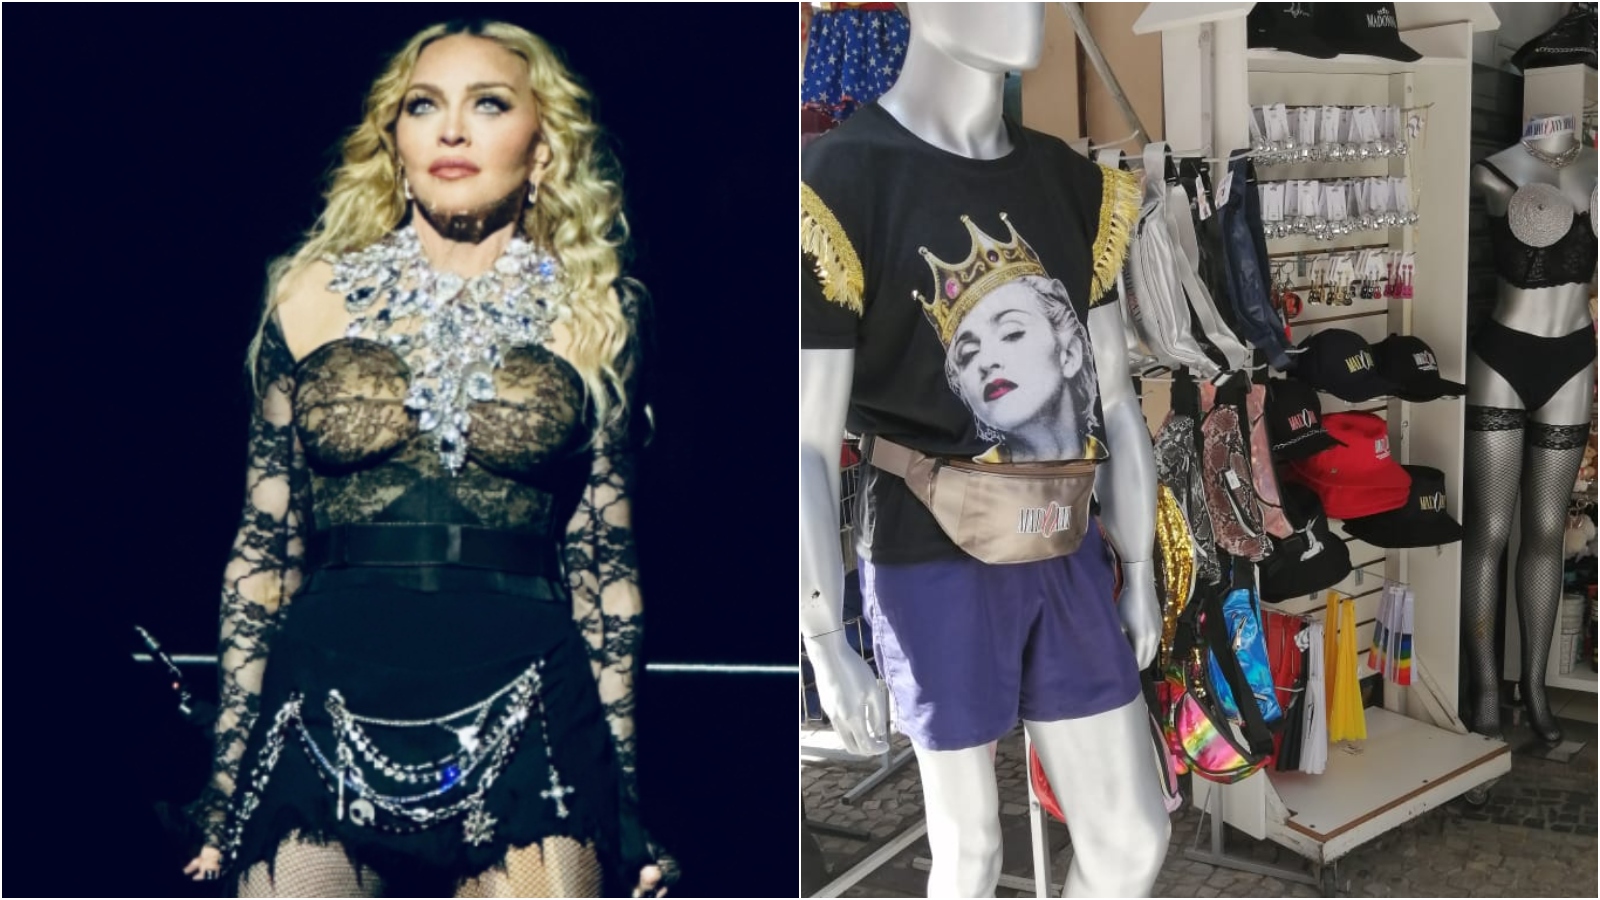 Show de Madonna no Rio de Janeiro aquece comércio popular da cidade